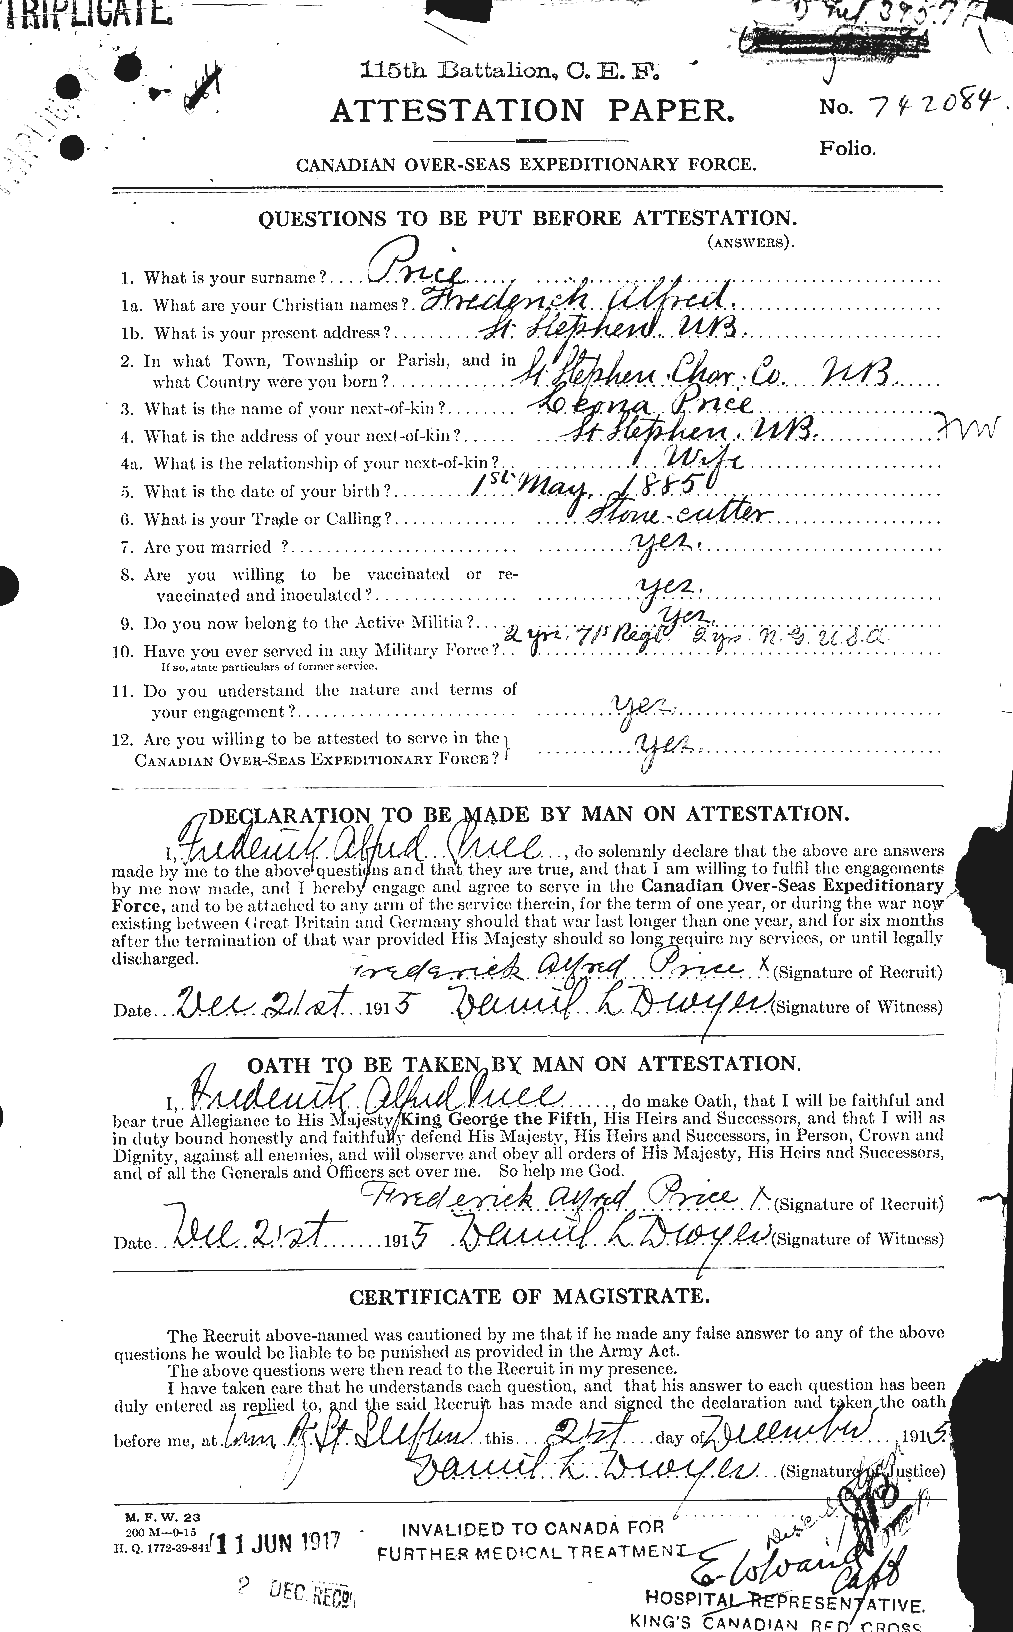 Dossiers du Personnel de la Première Guerre mondiale - CEC 587070a